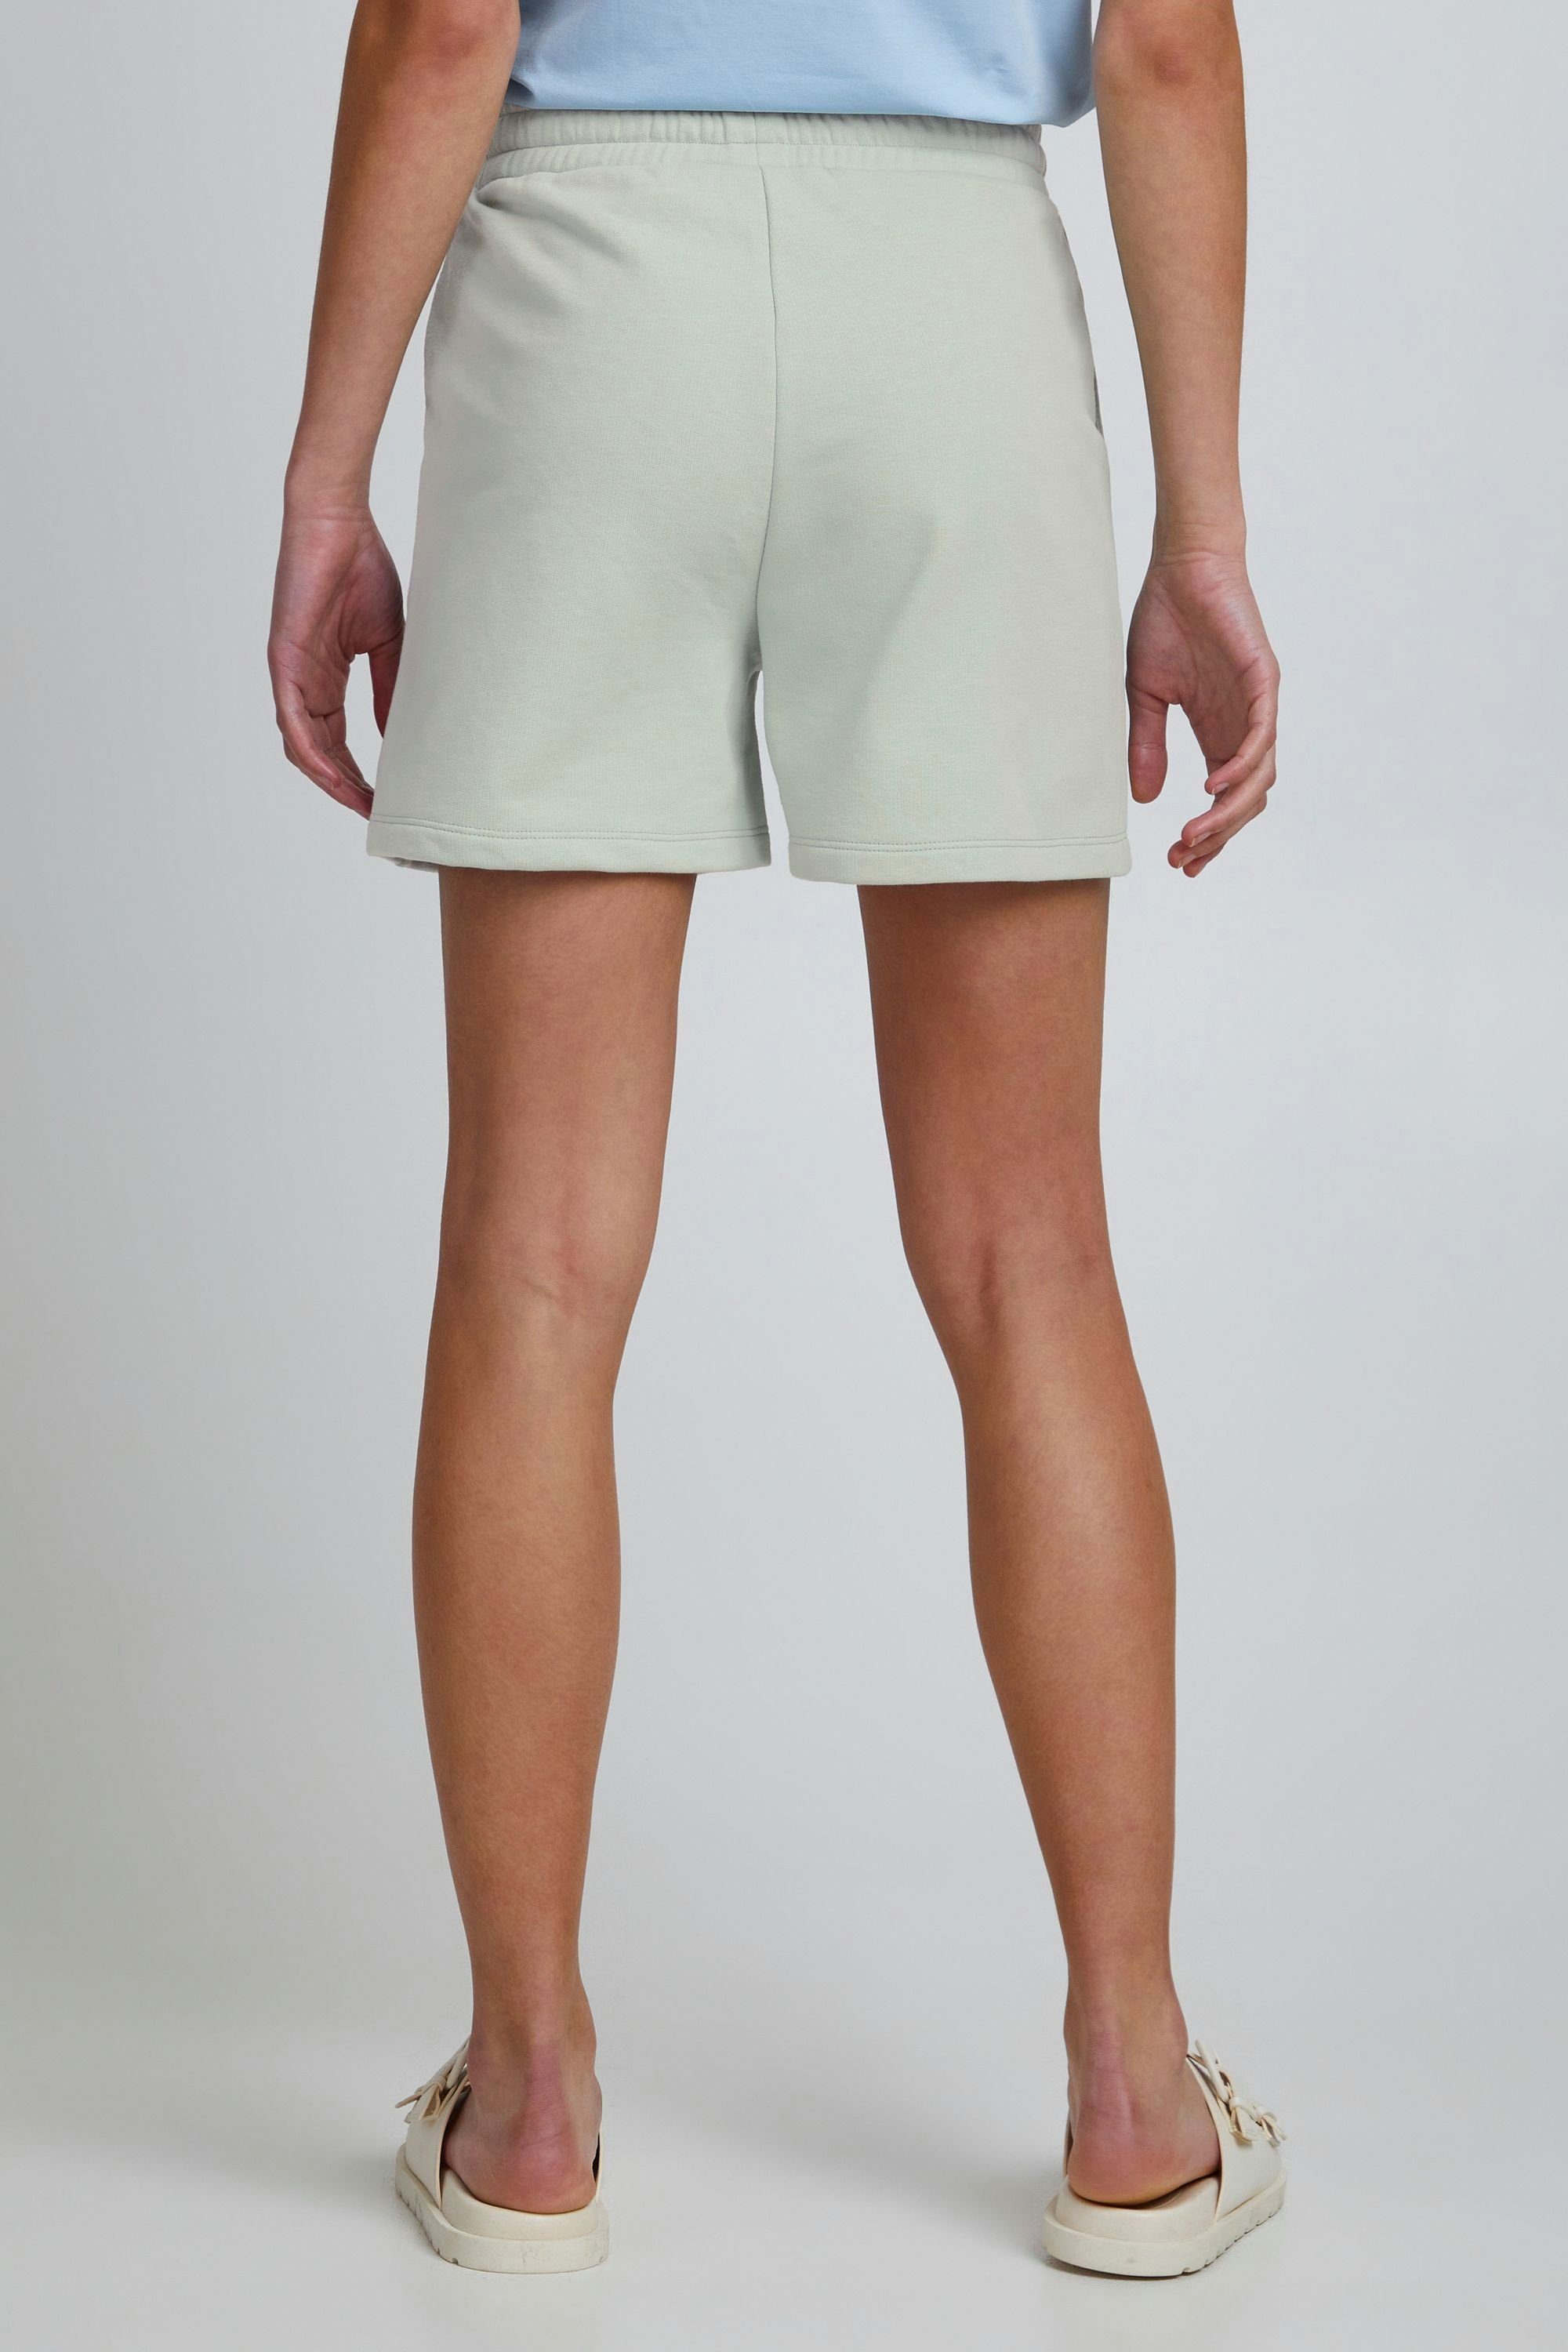 Sweatshorts - JCSAFINE TheJoggConcept. Frosty Green SHORTS bequeme (155706) lässige Shorts und 22800019